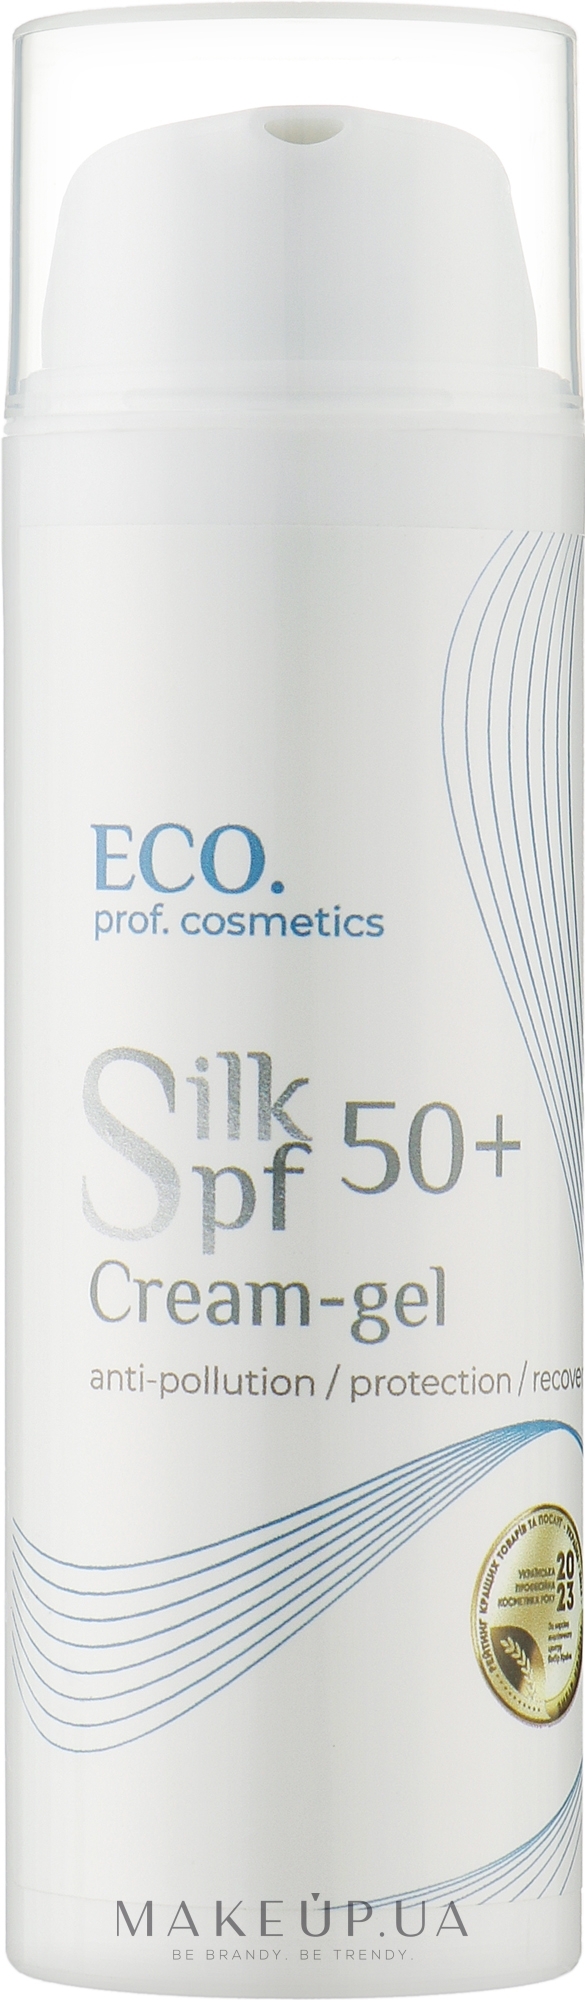 Солнцезащитный крем-гель - Eco.prof.cosmetics Cream-Gel Silk SPF 50+ — фото 50ml